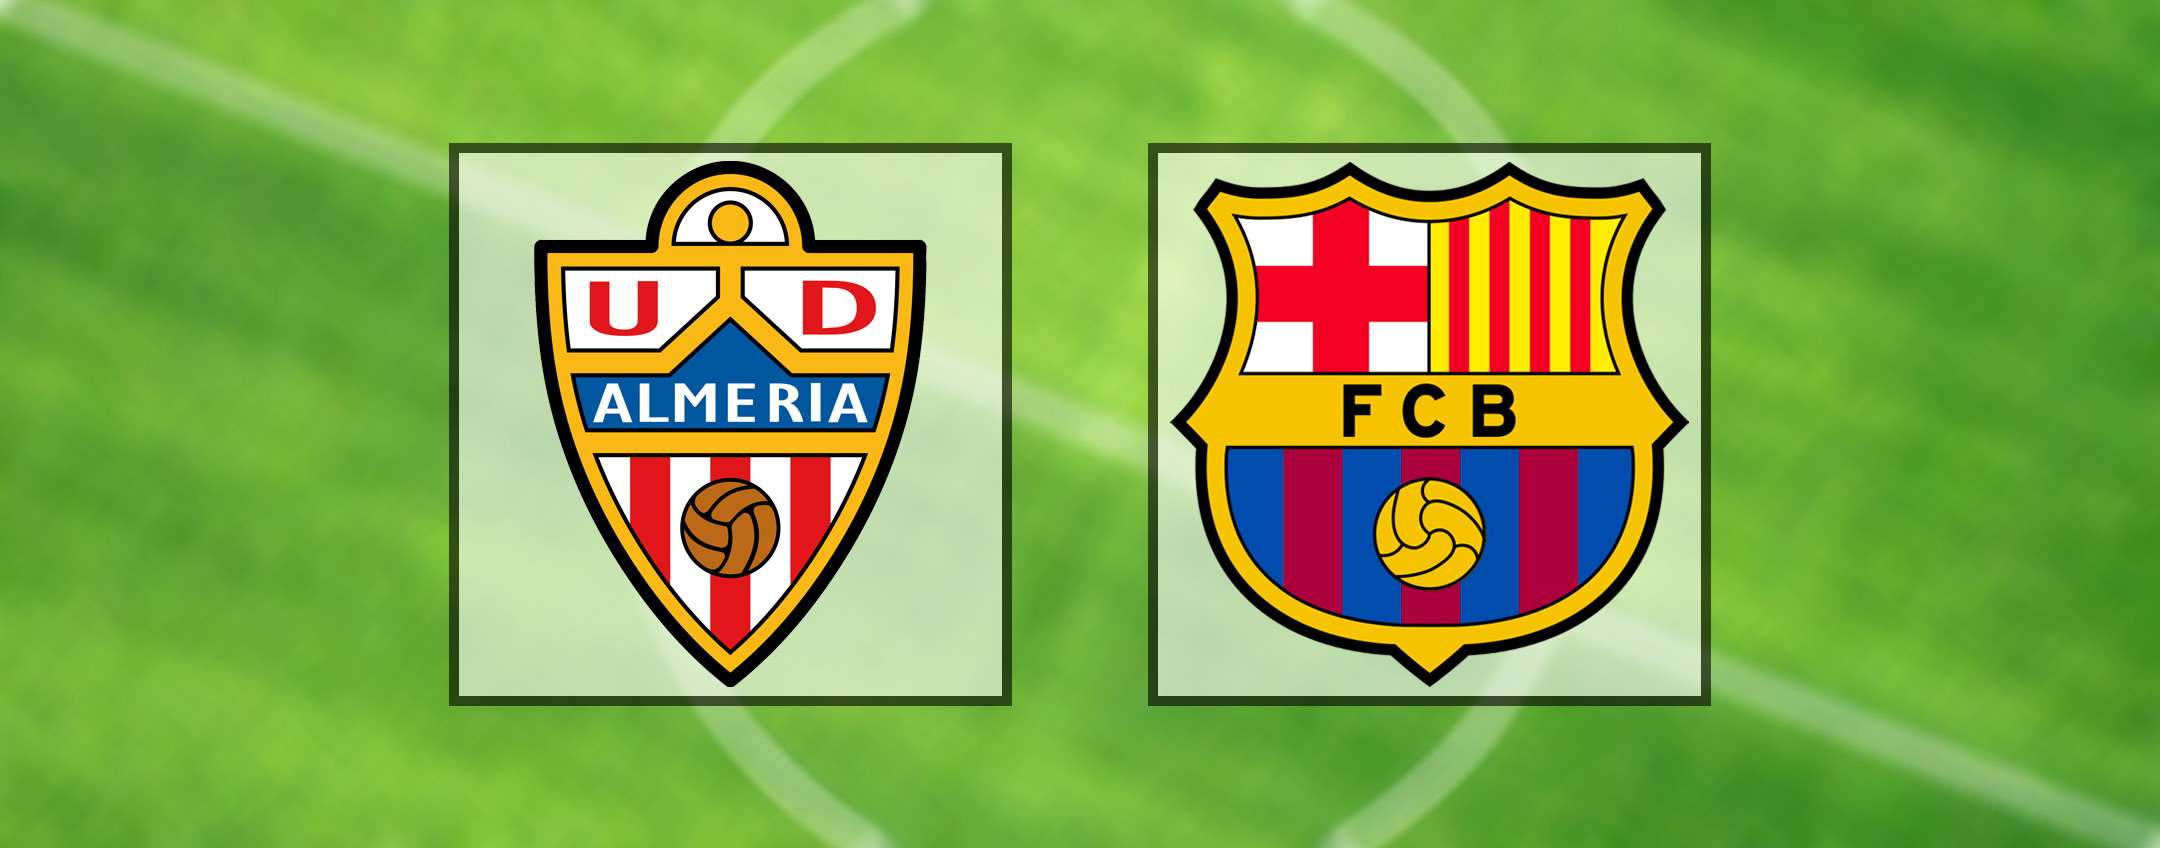 Come vedere Almeria-Barcellona in diretta streaming (LaLiga)